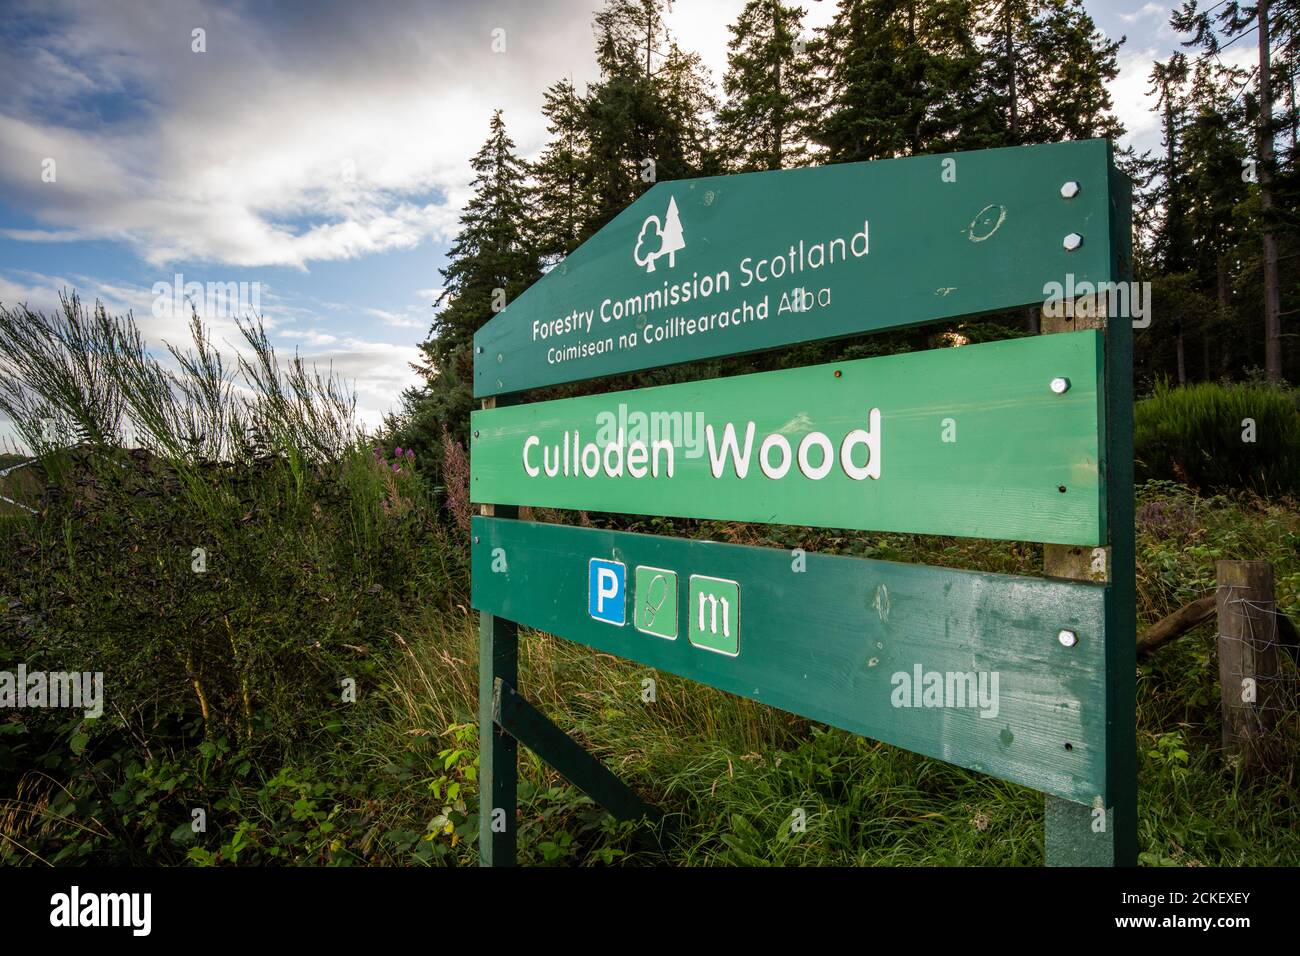 Culloden Wood, ein Forstkommissar Schottland Wald in der Nähe von Inverness, Schottland, Großbritannien Stockfoto